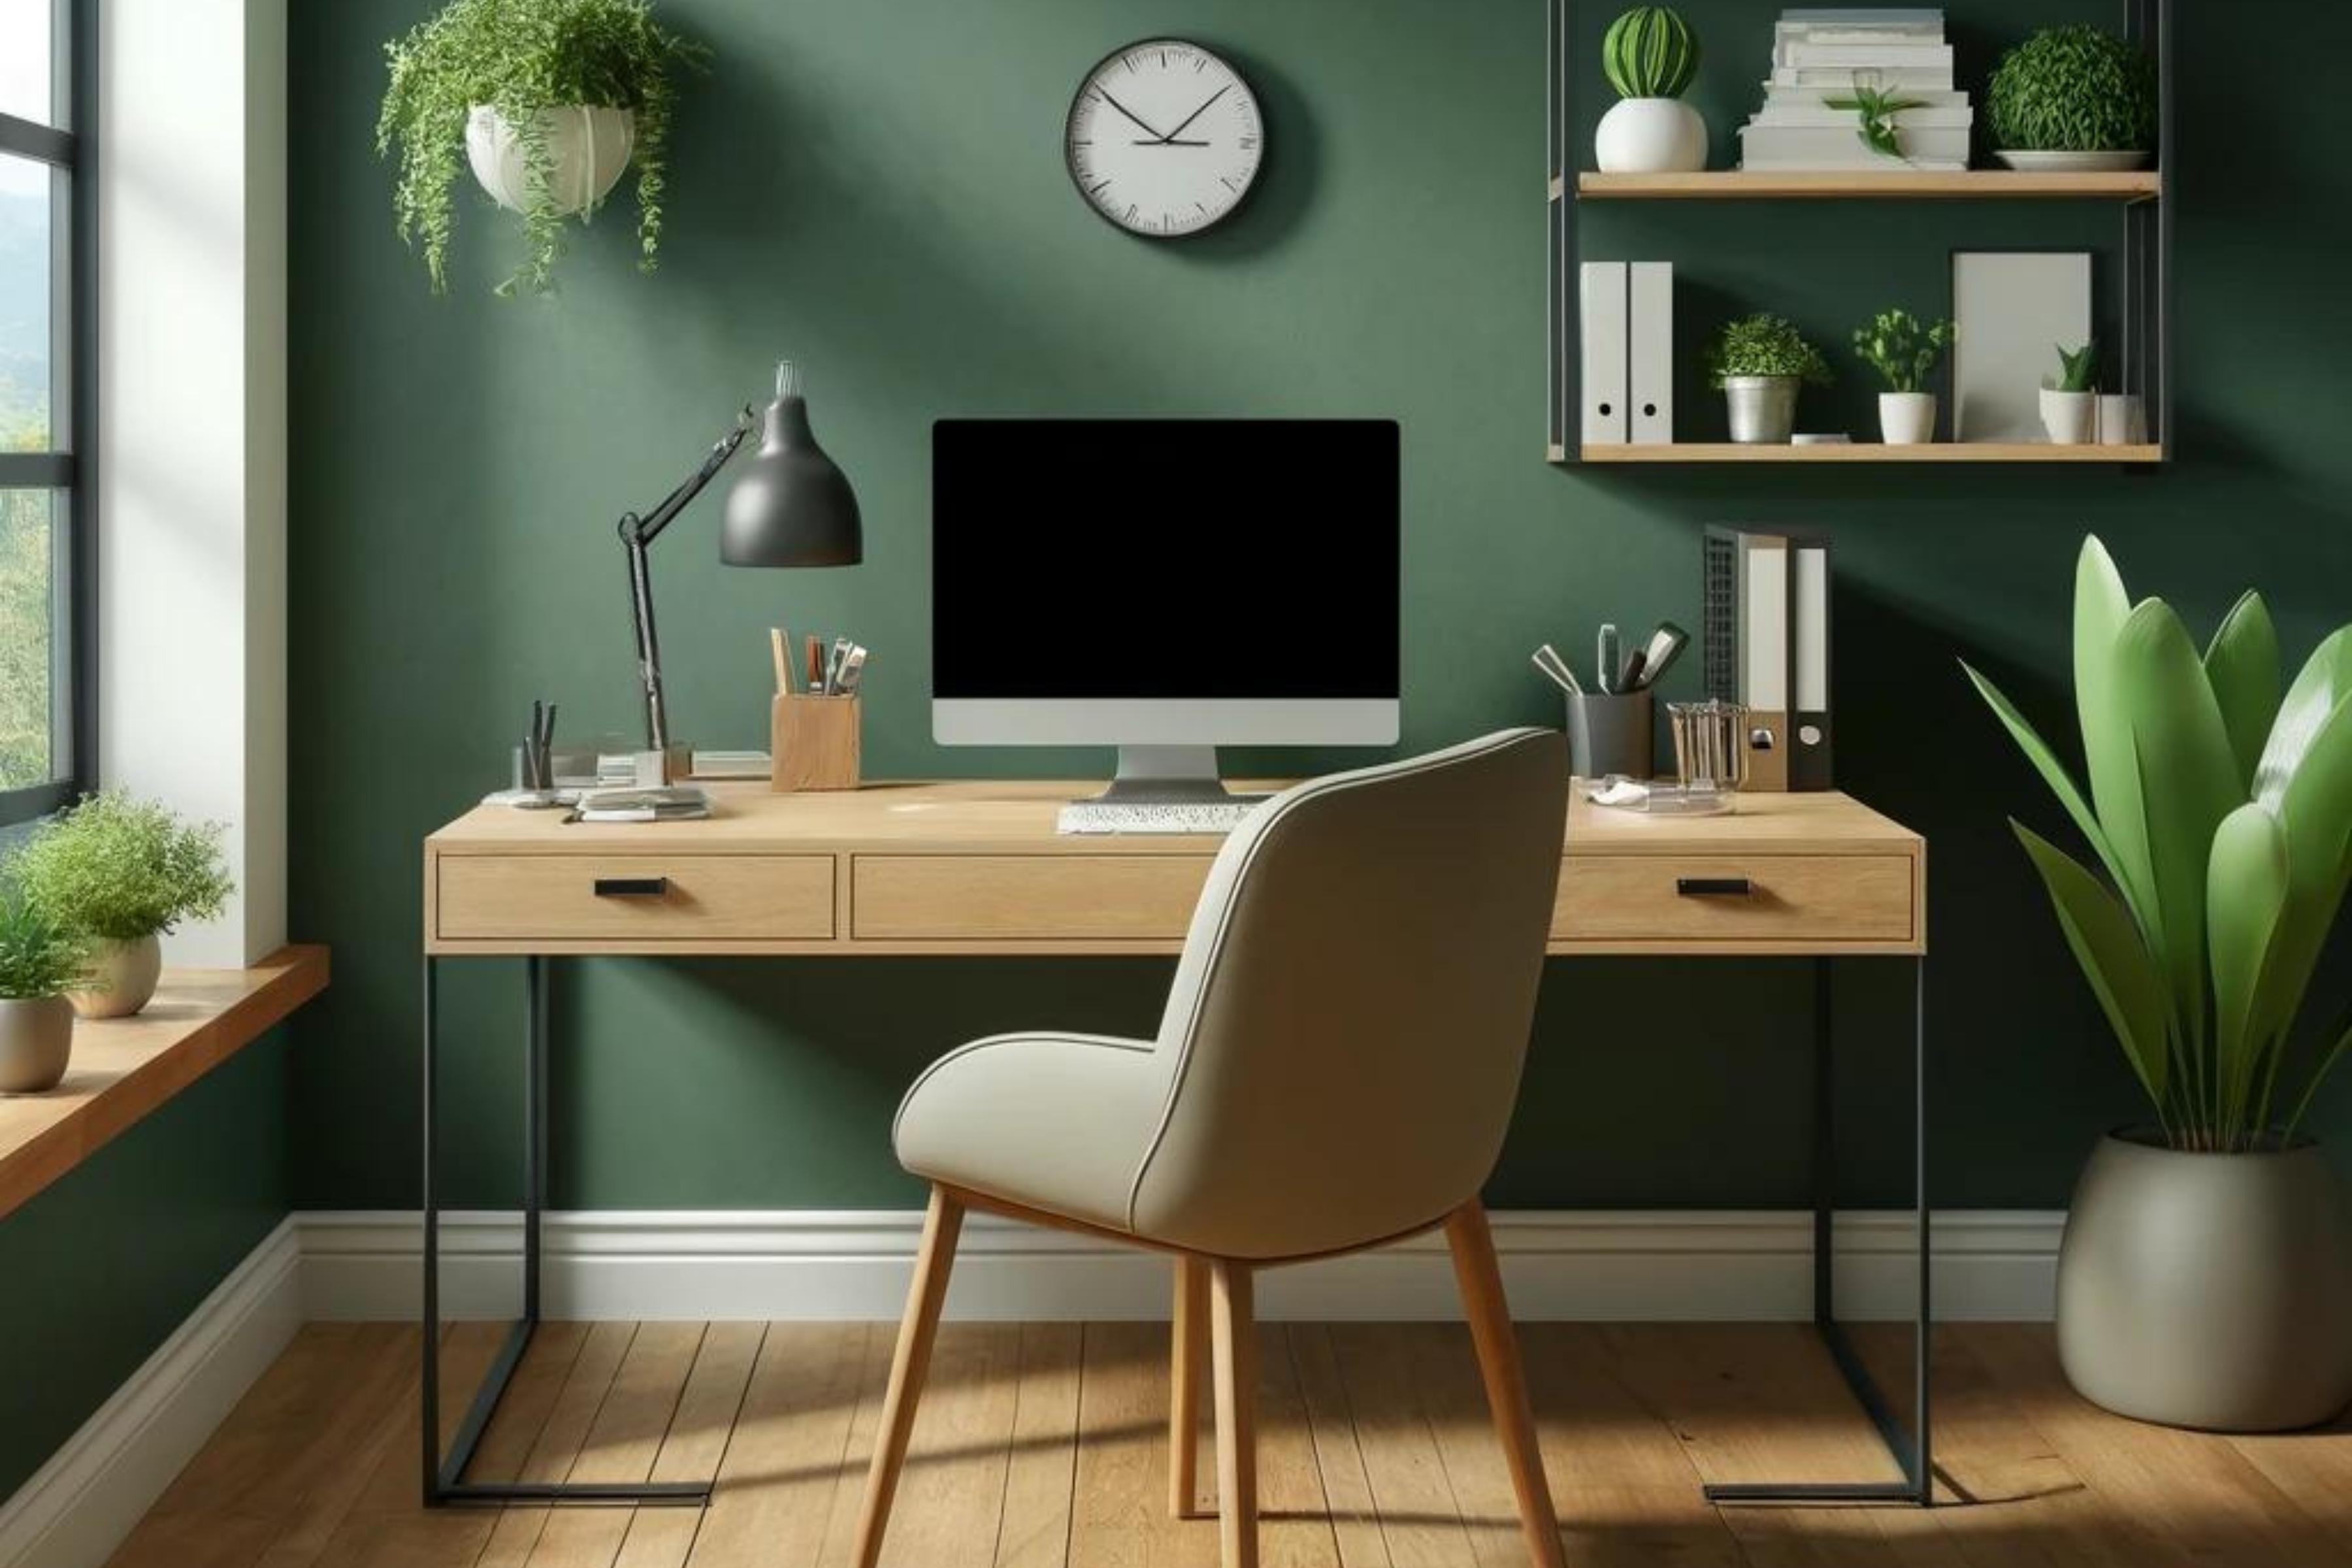 A dolgozószoba falain a mélyzöld színek a kreatív, sok stresszel járó feladatok alatt jöhetnek jól. 